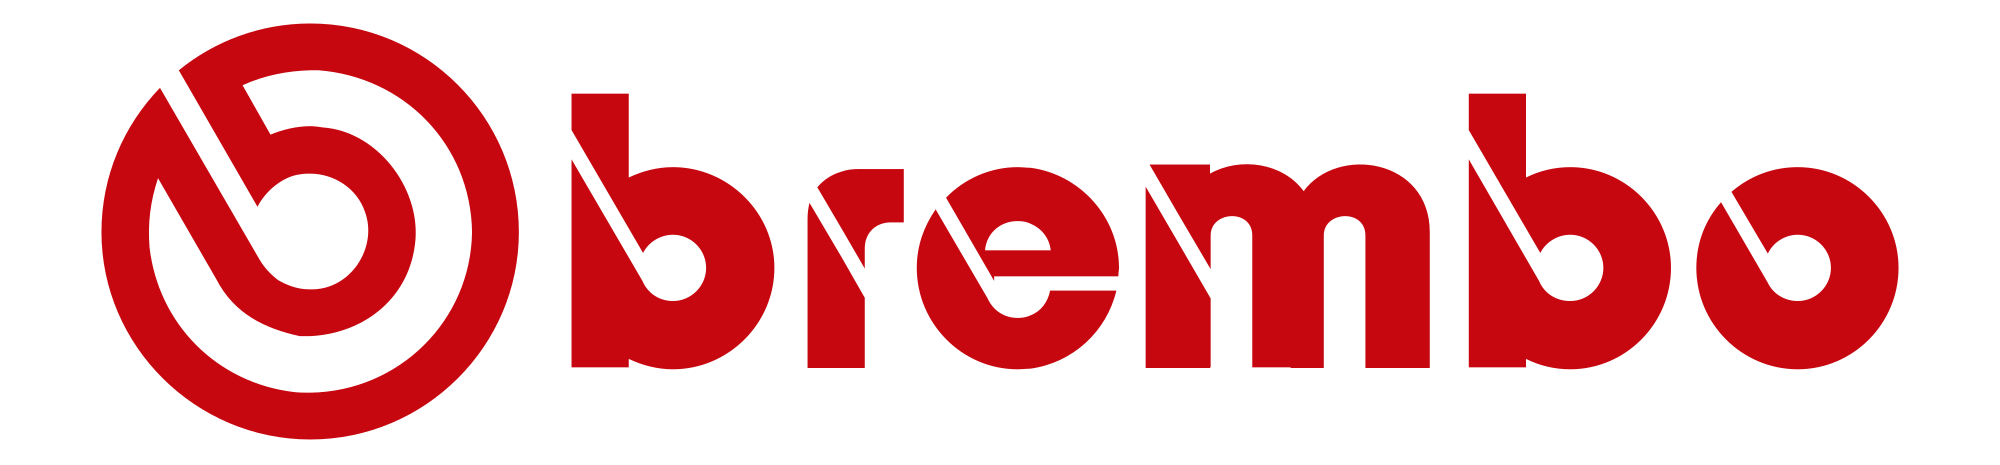 Brembo-logo.svg